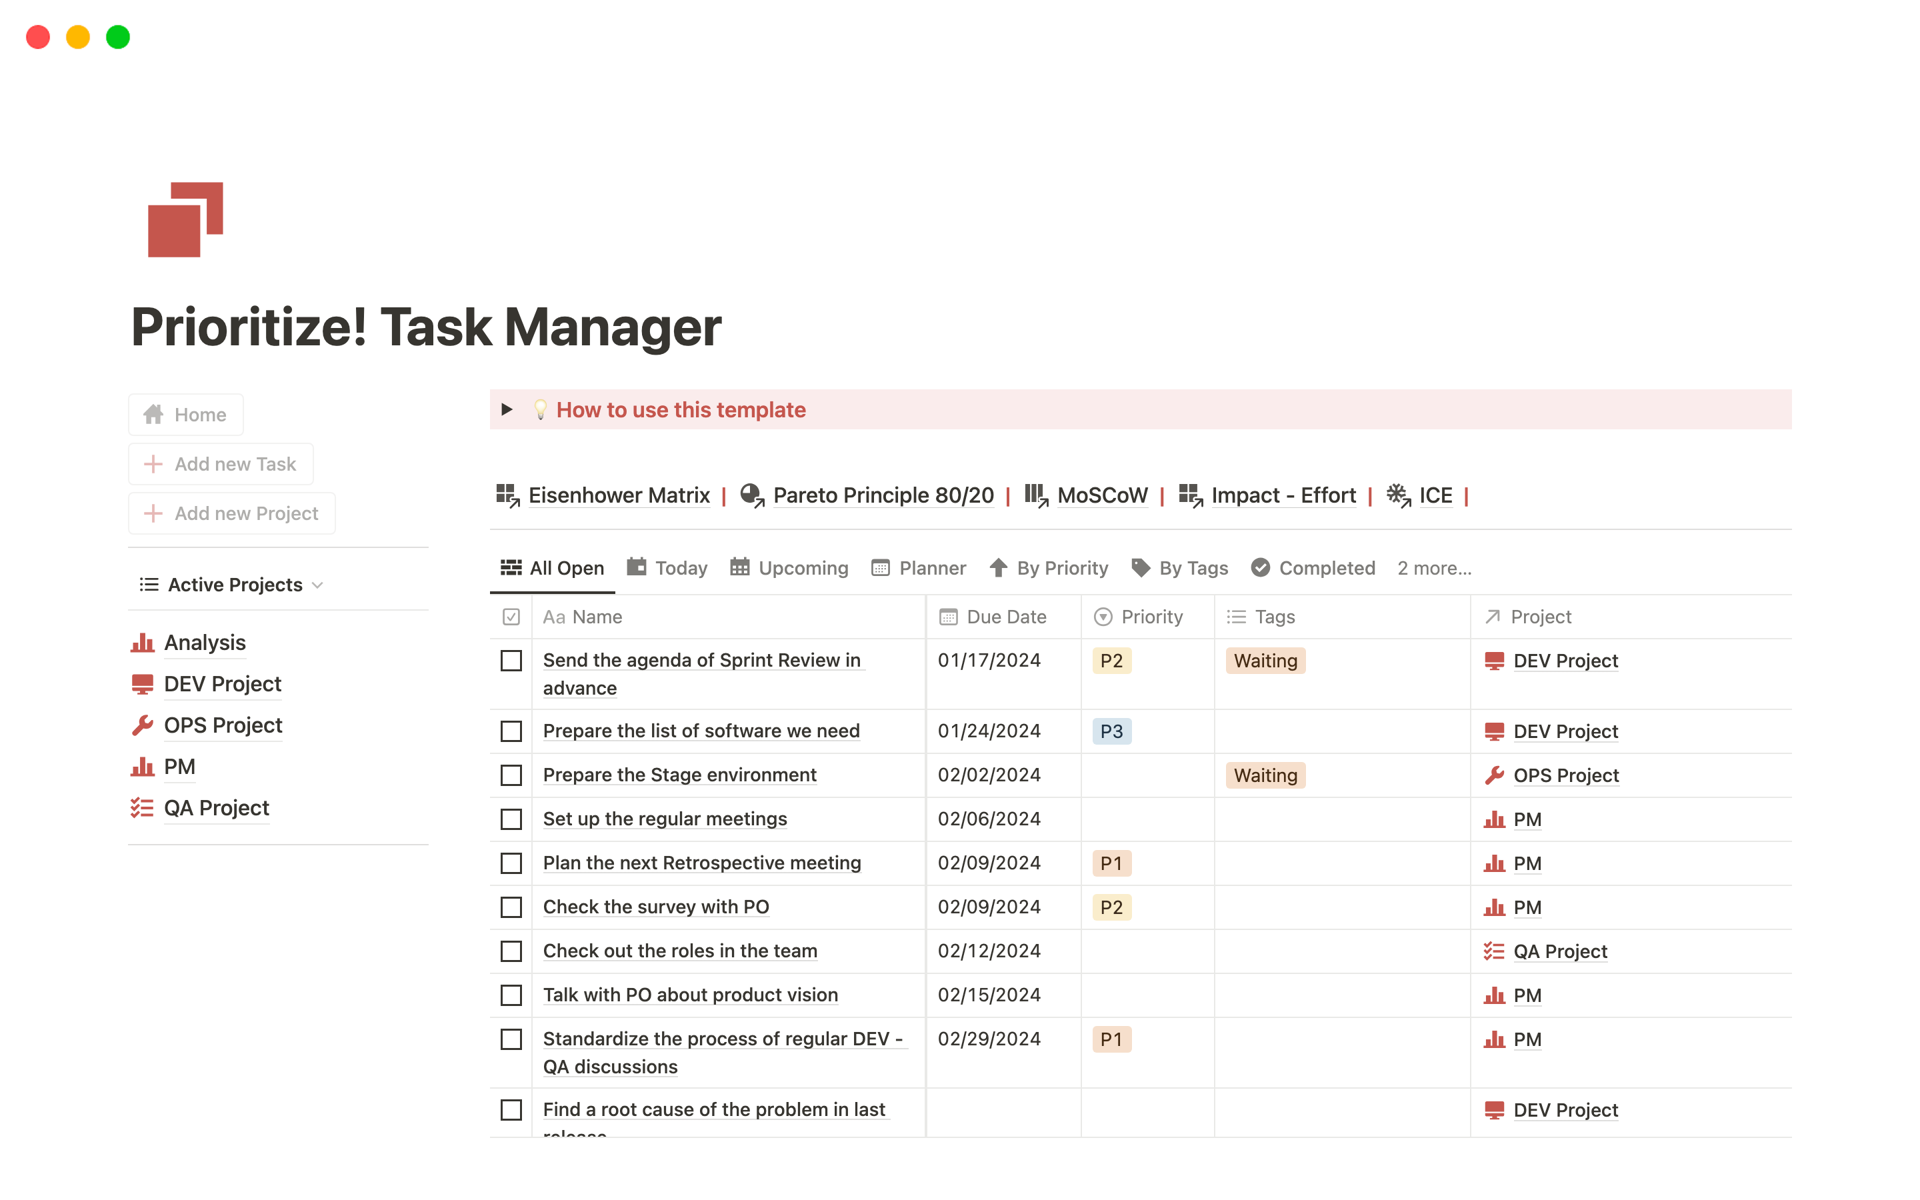 Uma prévia do modelo para Prioritize! Task Manager